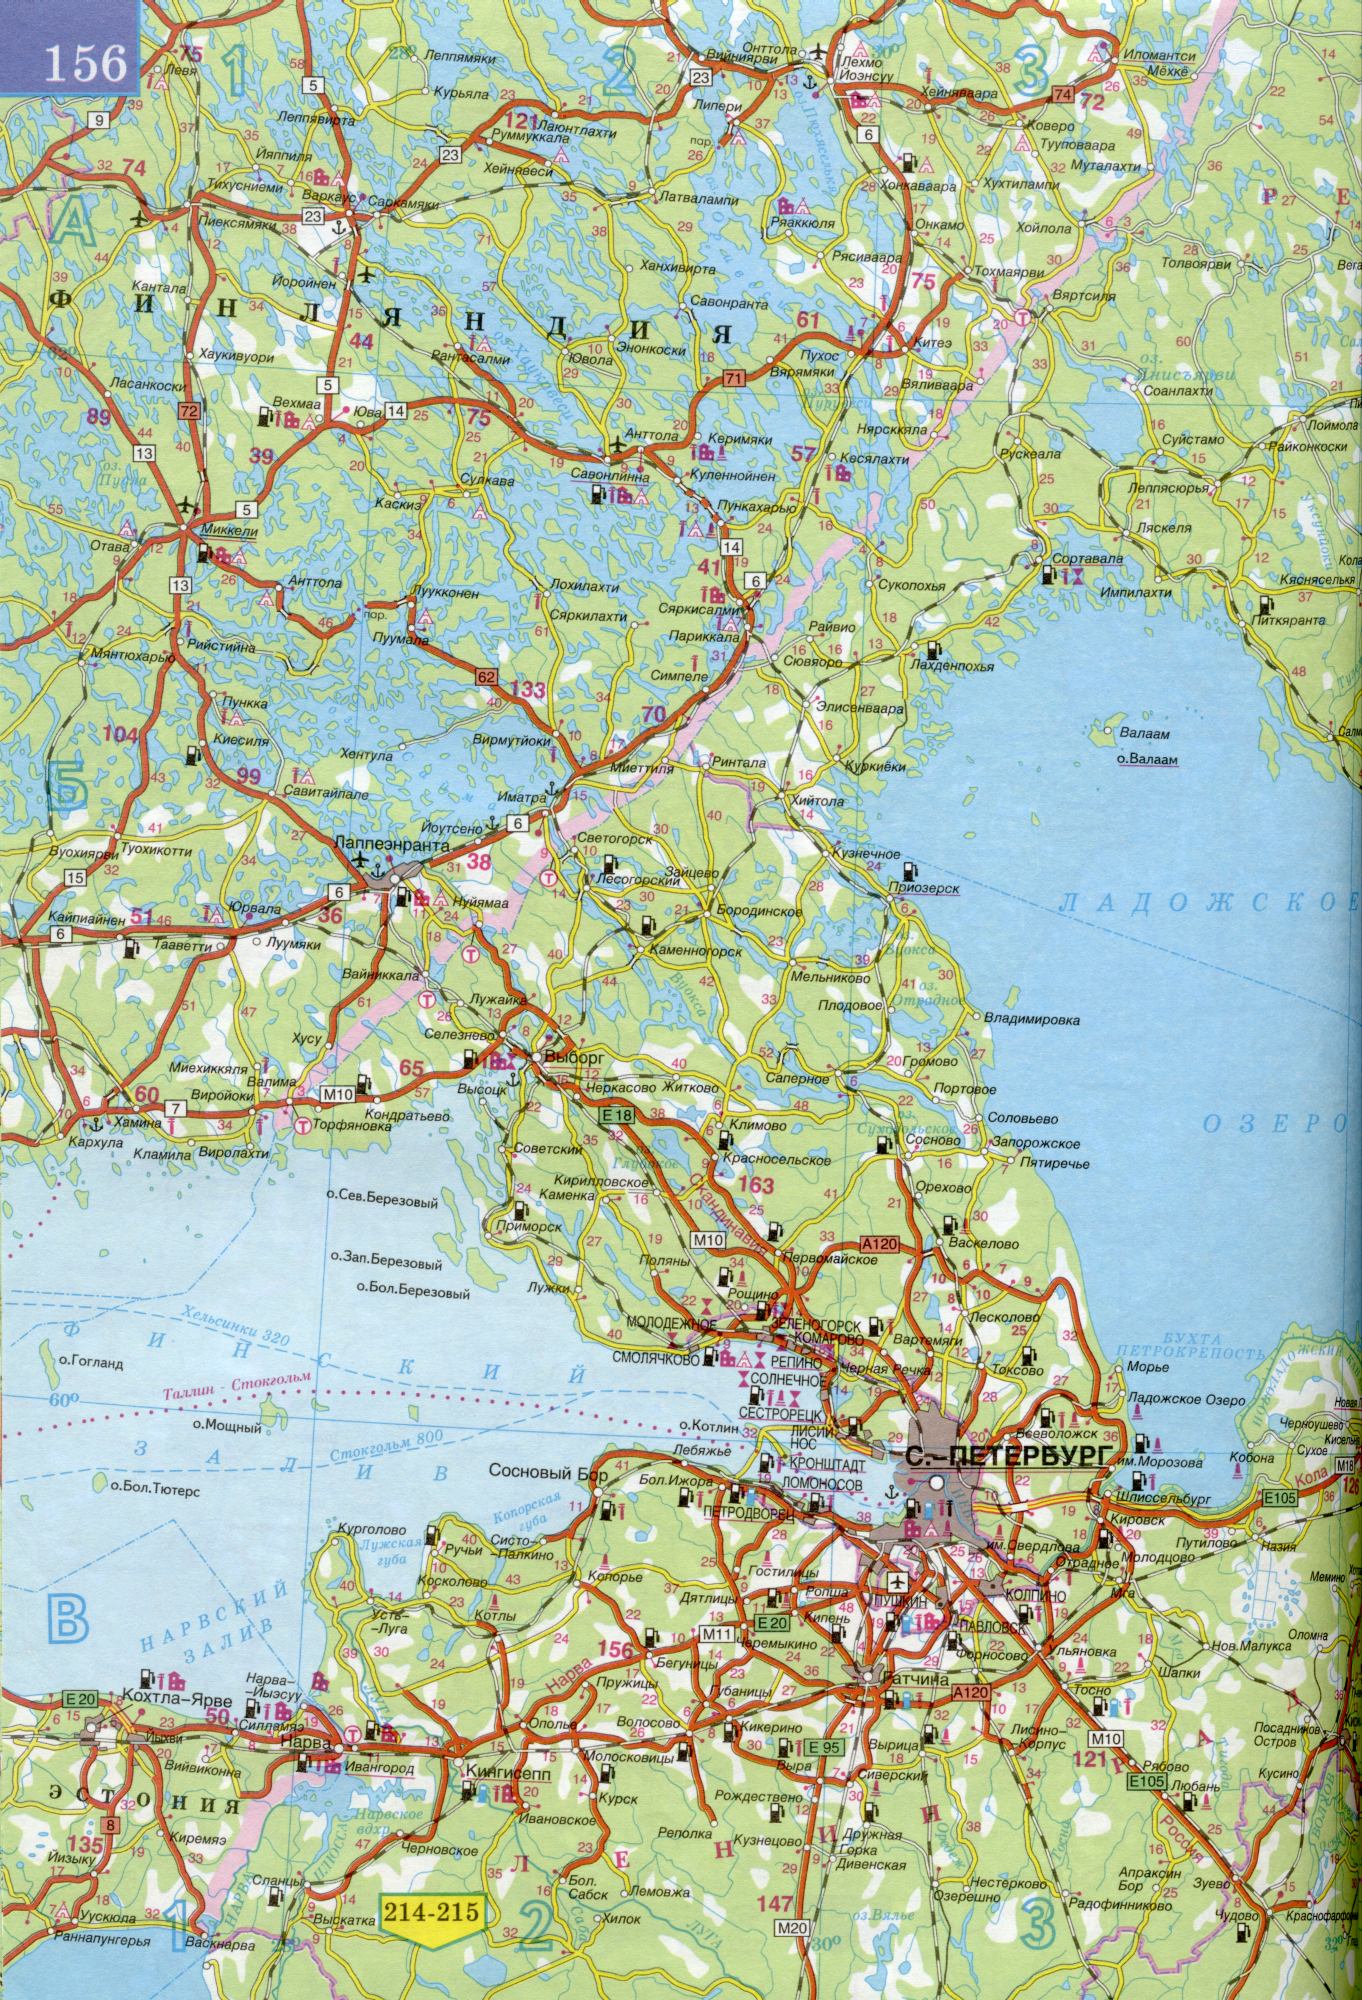 Карта республики Карелия 1см=15км. Карта автомобильных дорог республика Карелия. Скачать бесплатно подробную карту , A1 - 